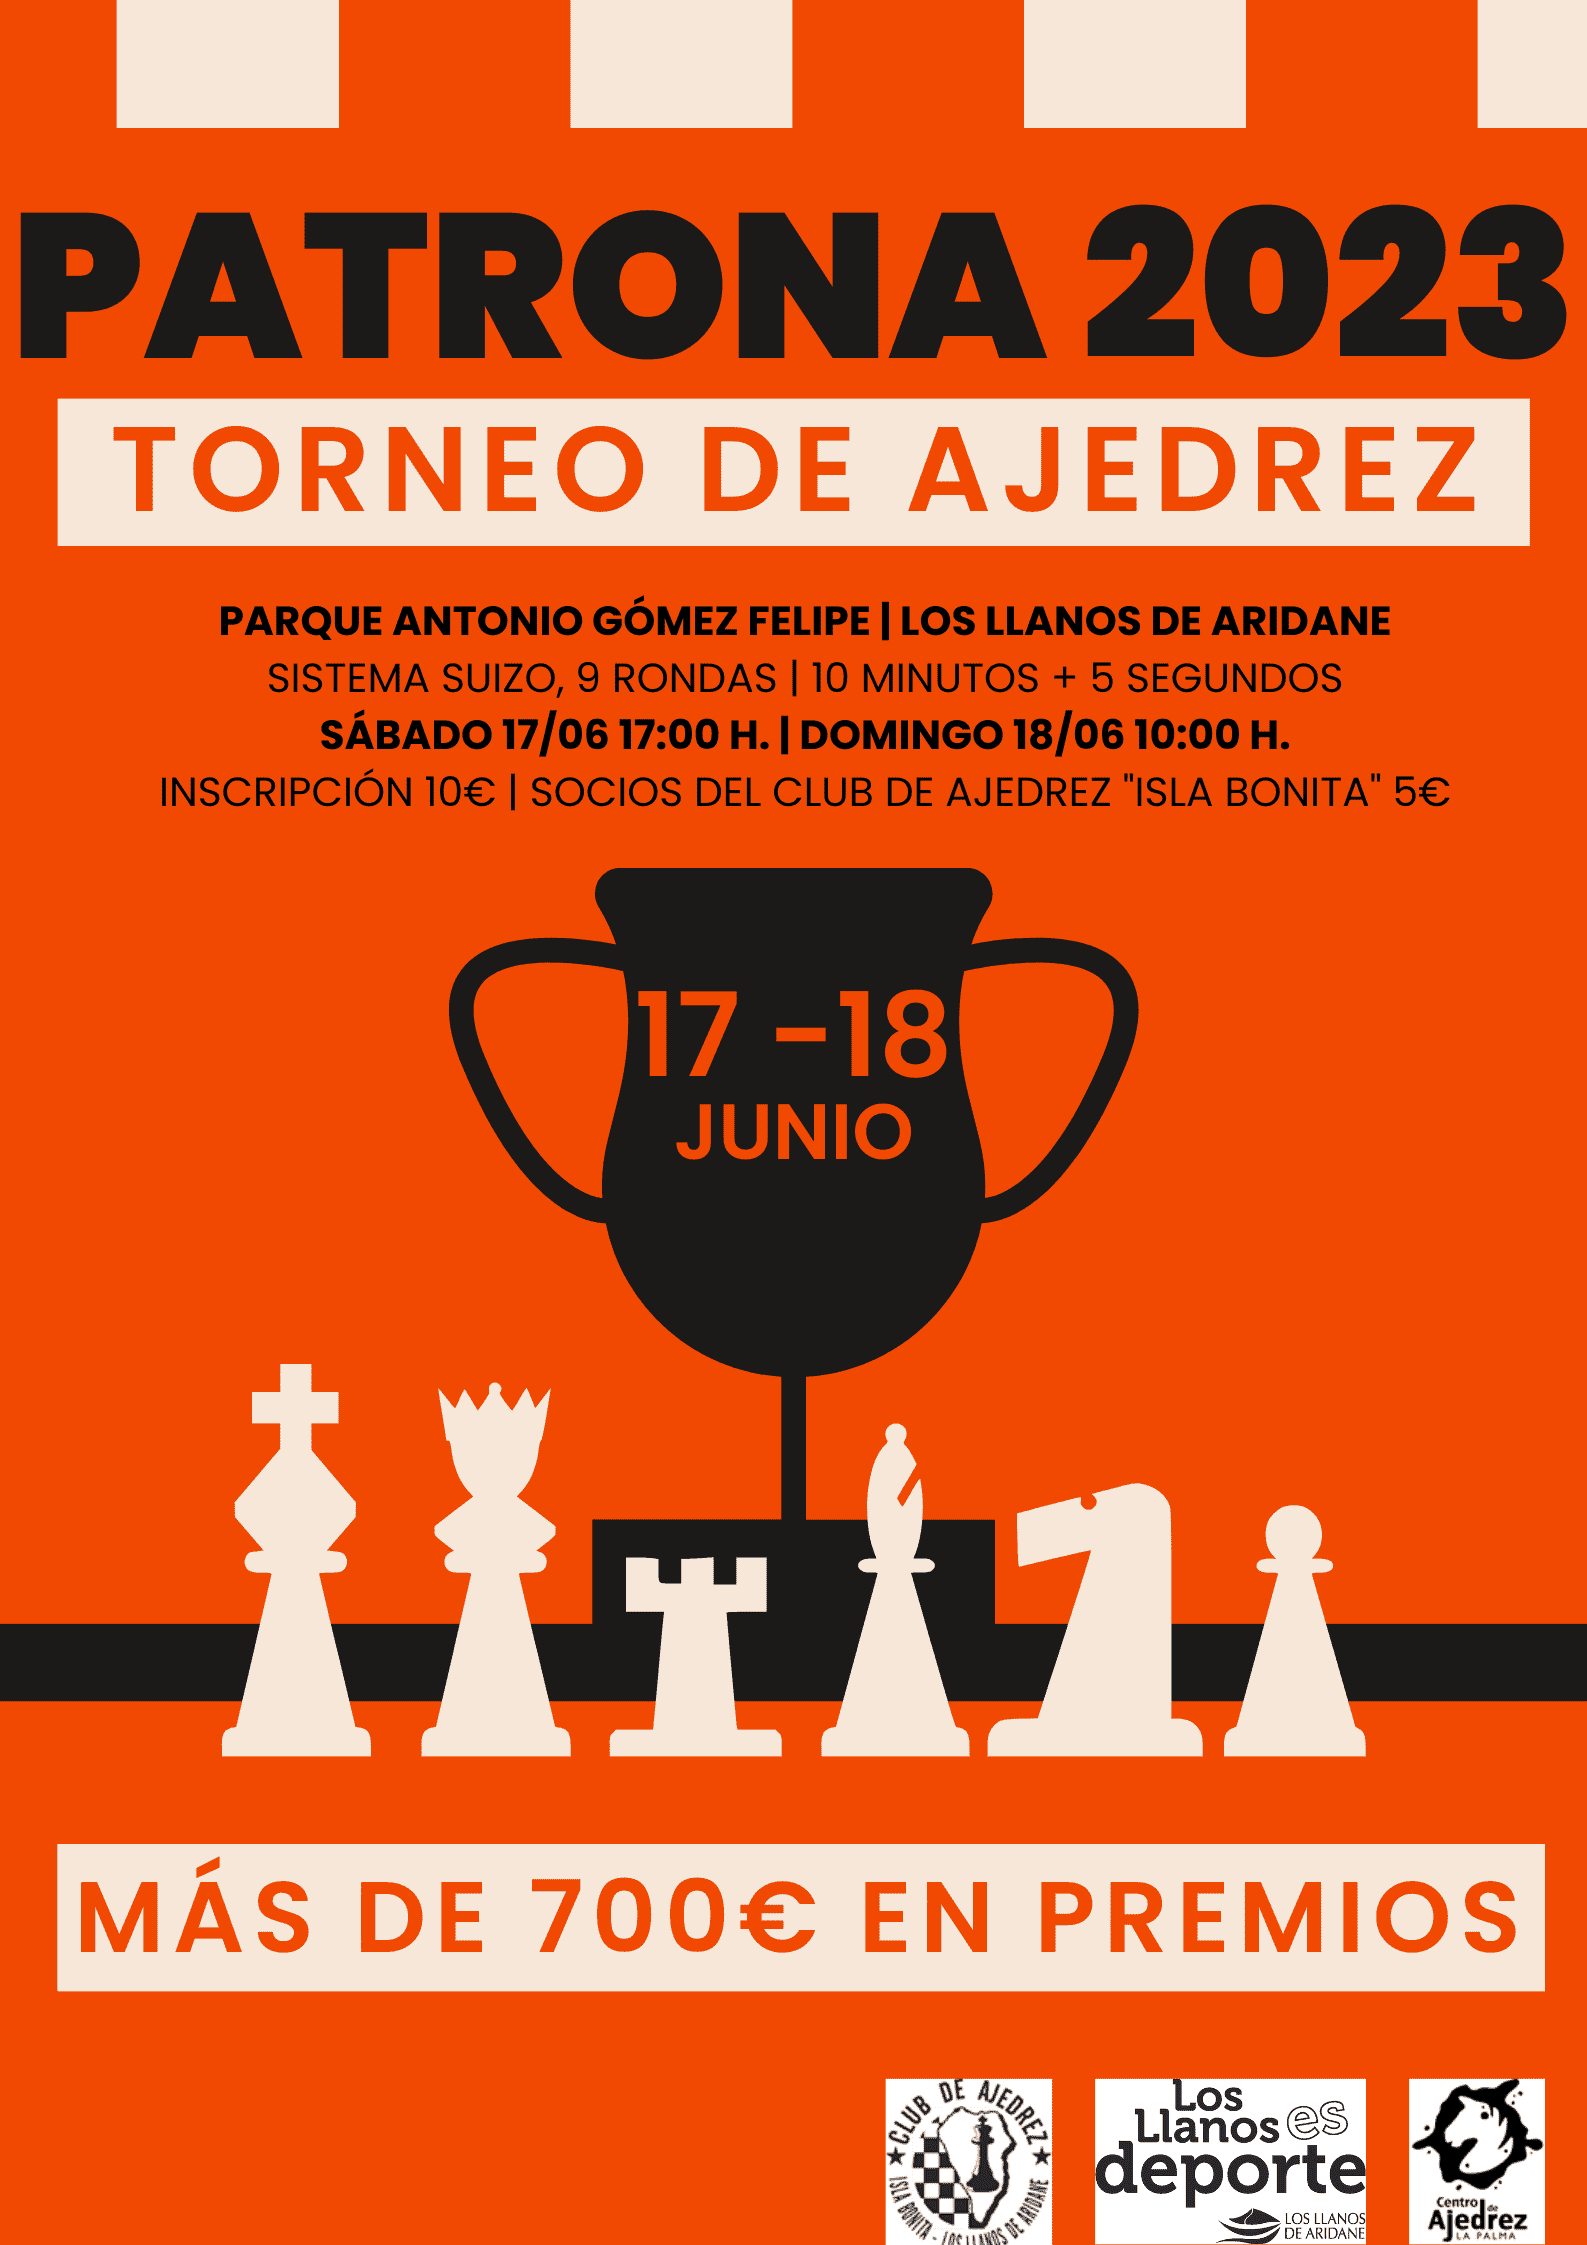 Los Llanos de Aridane acoge el Torneo de Ajedrez Patrona 2023 los días 17 y 18 de junio